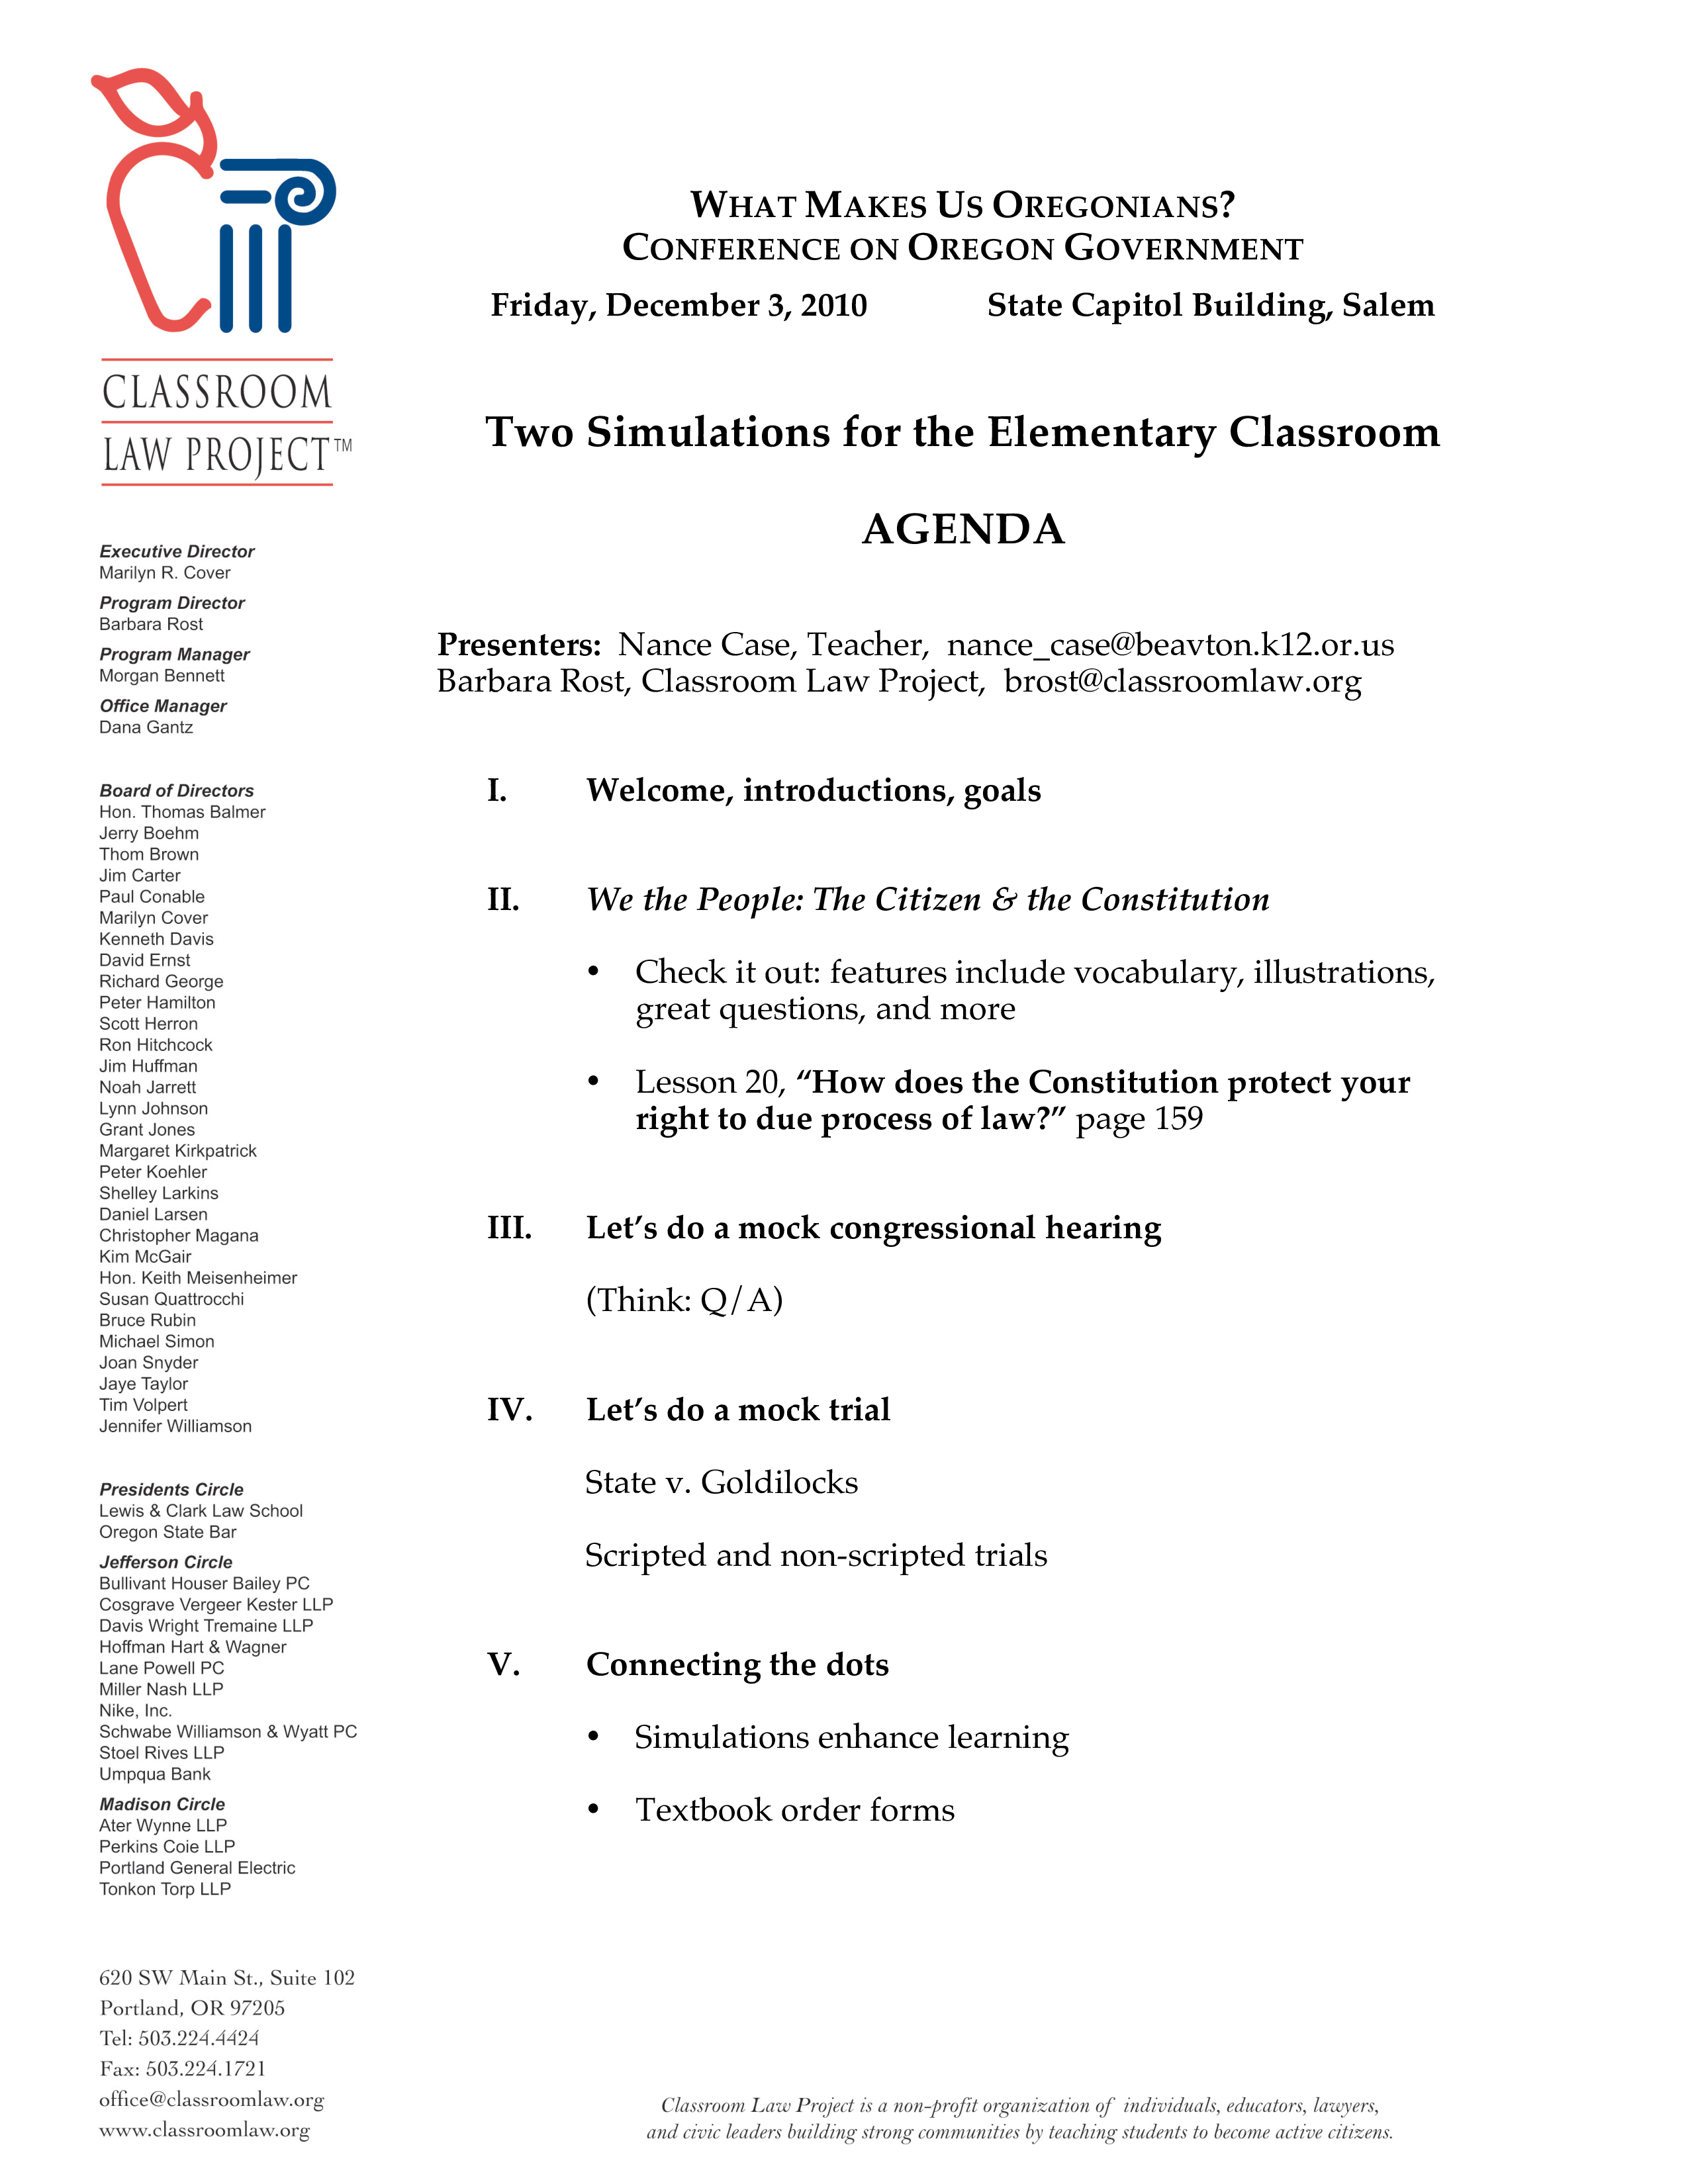 sample classroom agenda plantilla imagen principal